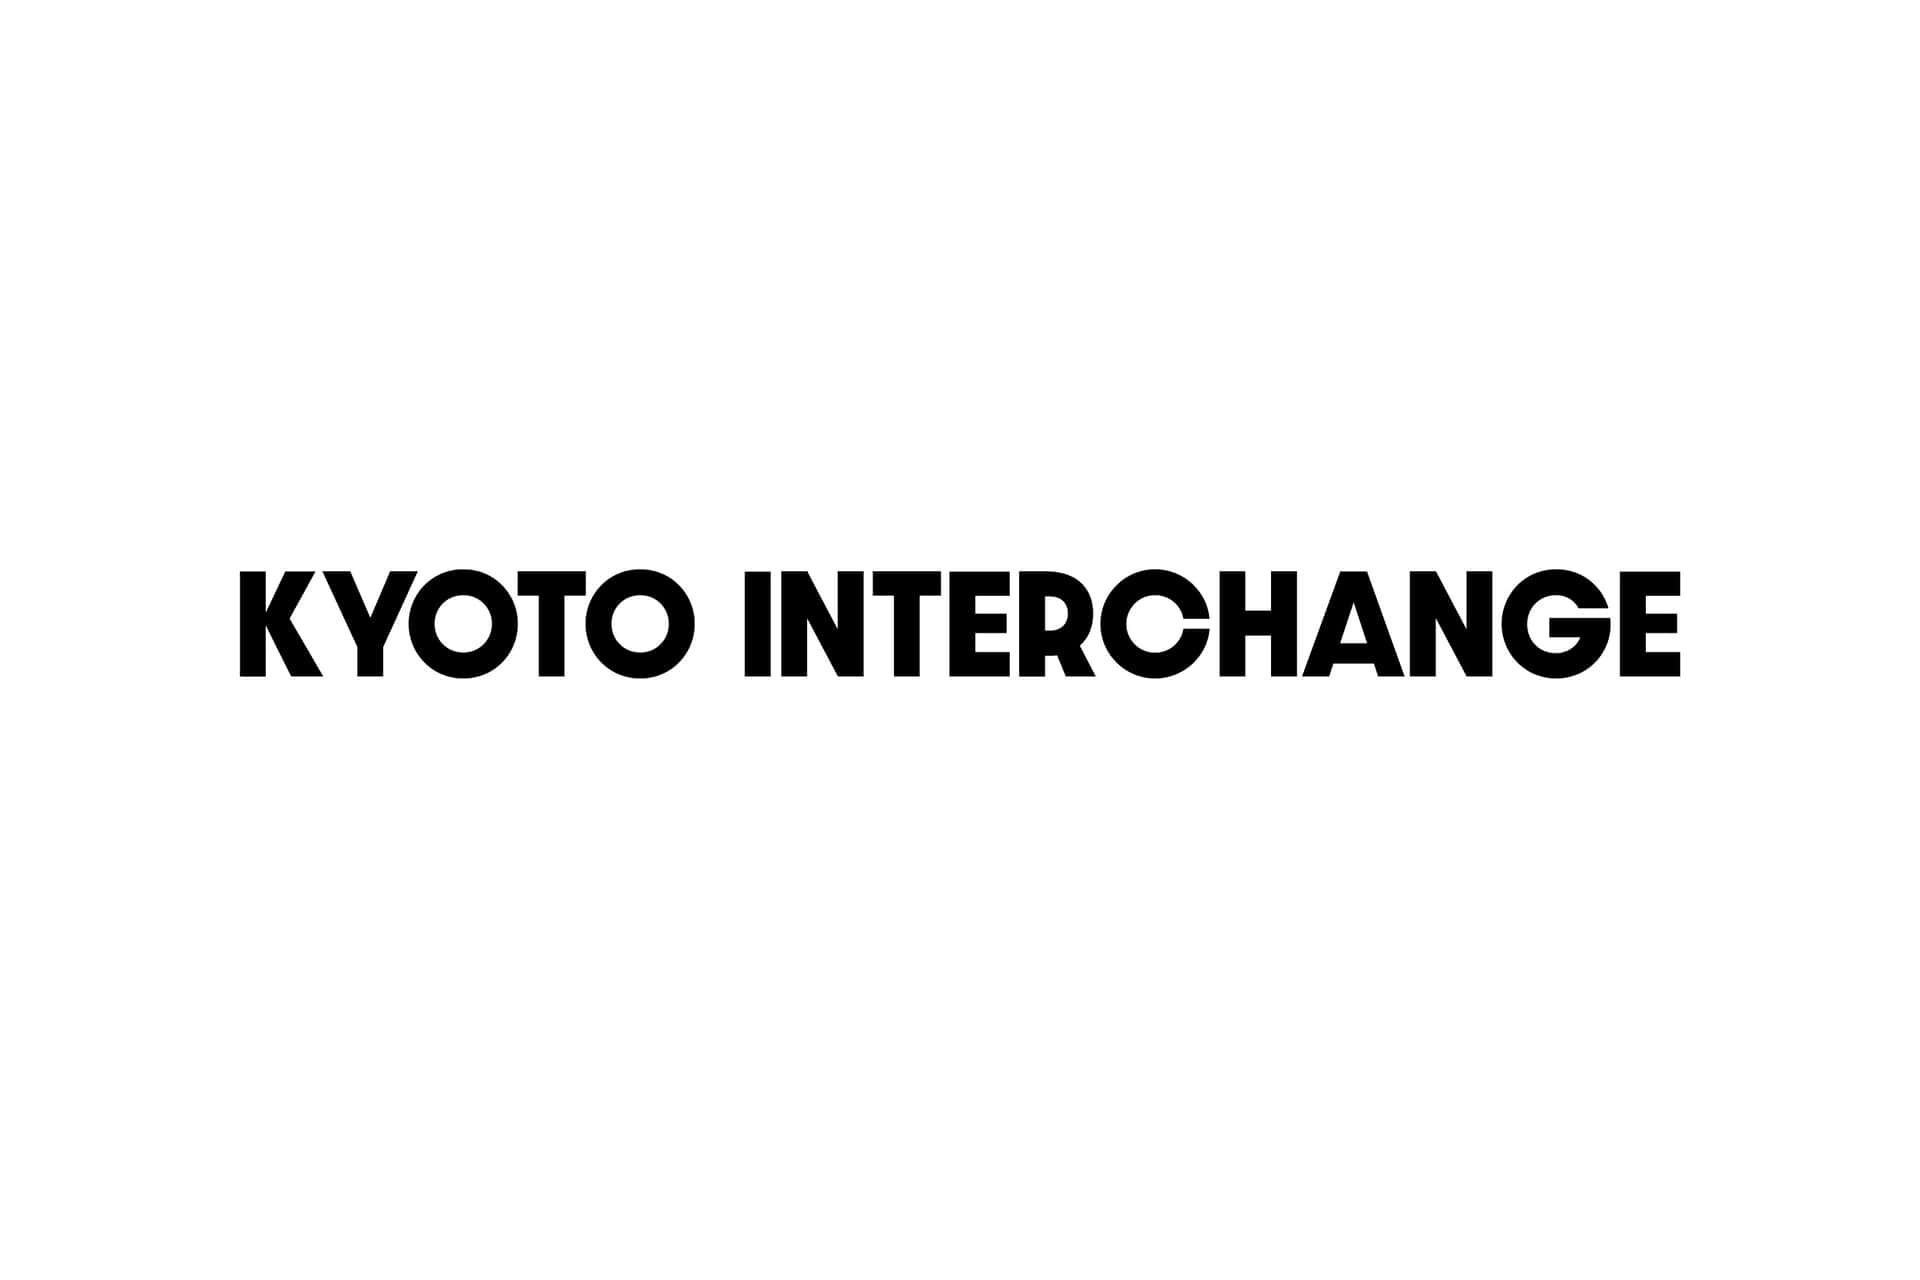 Kyotoaustausch-logo Auf Weißem Hintergrund. Wallpaper